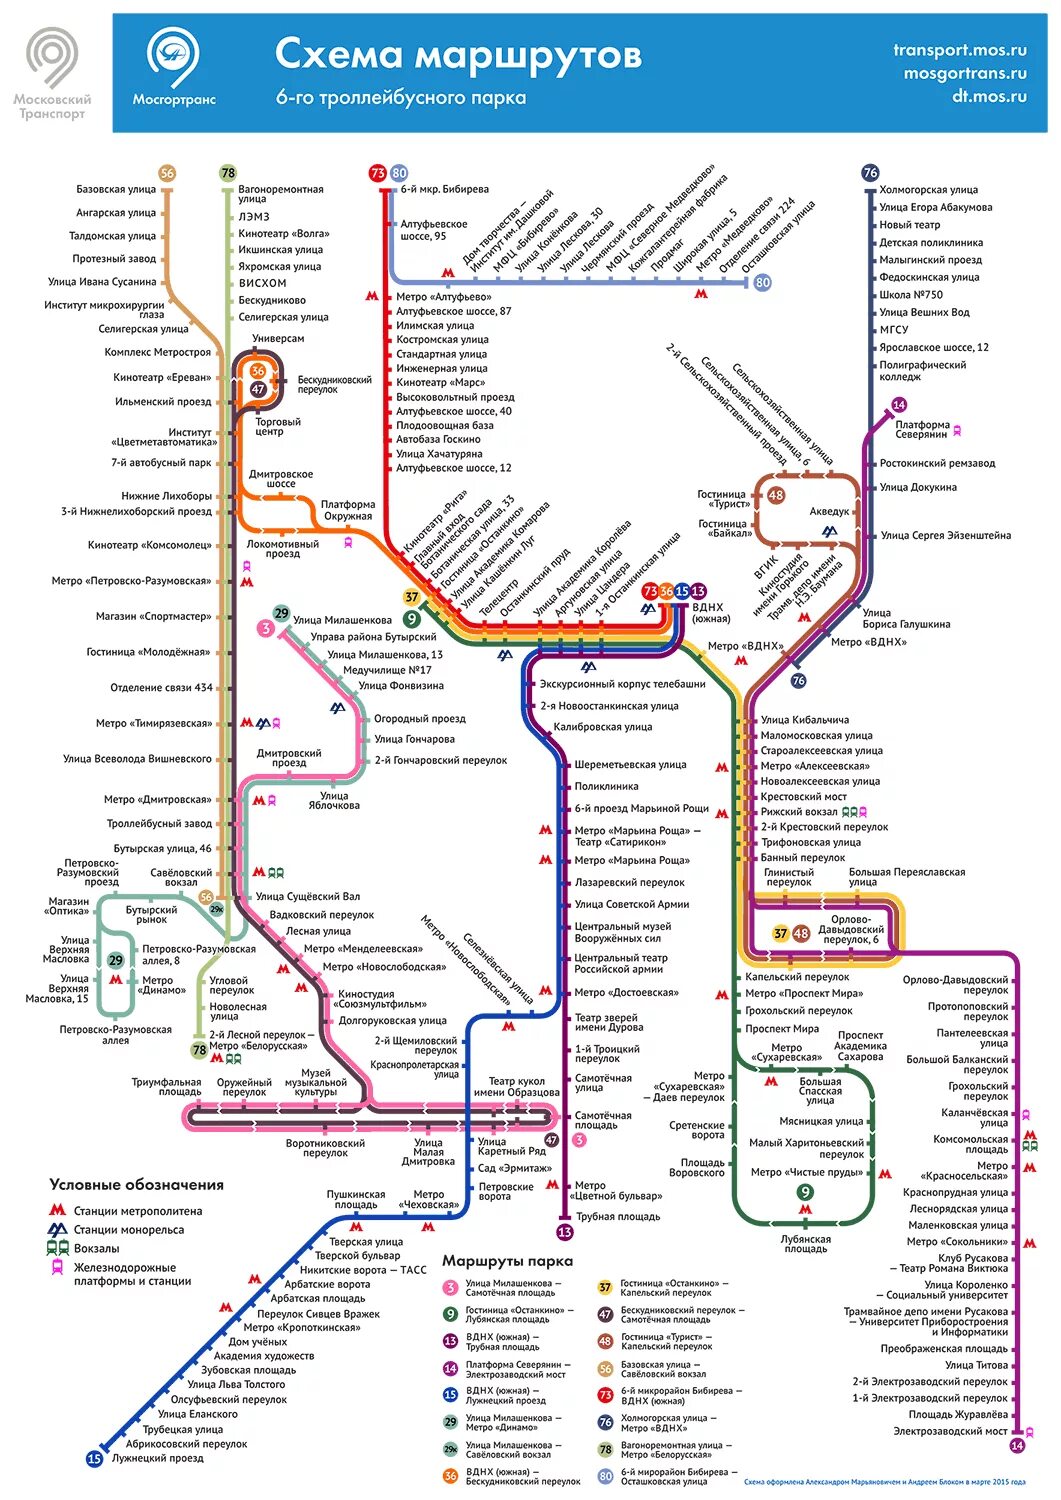 Схема маршрутов троллейбуса троллейбусный парк 1 СПБ. Схема маршрутов троллейбусов Москвы. Схема маршрутов троллейбусов 7 троллейбусного парка Москва. Схема маршрутов 2 троллейбусного парка Москвы.